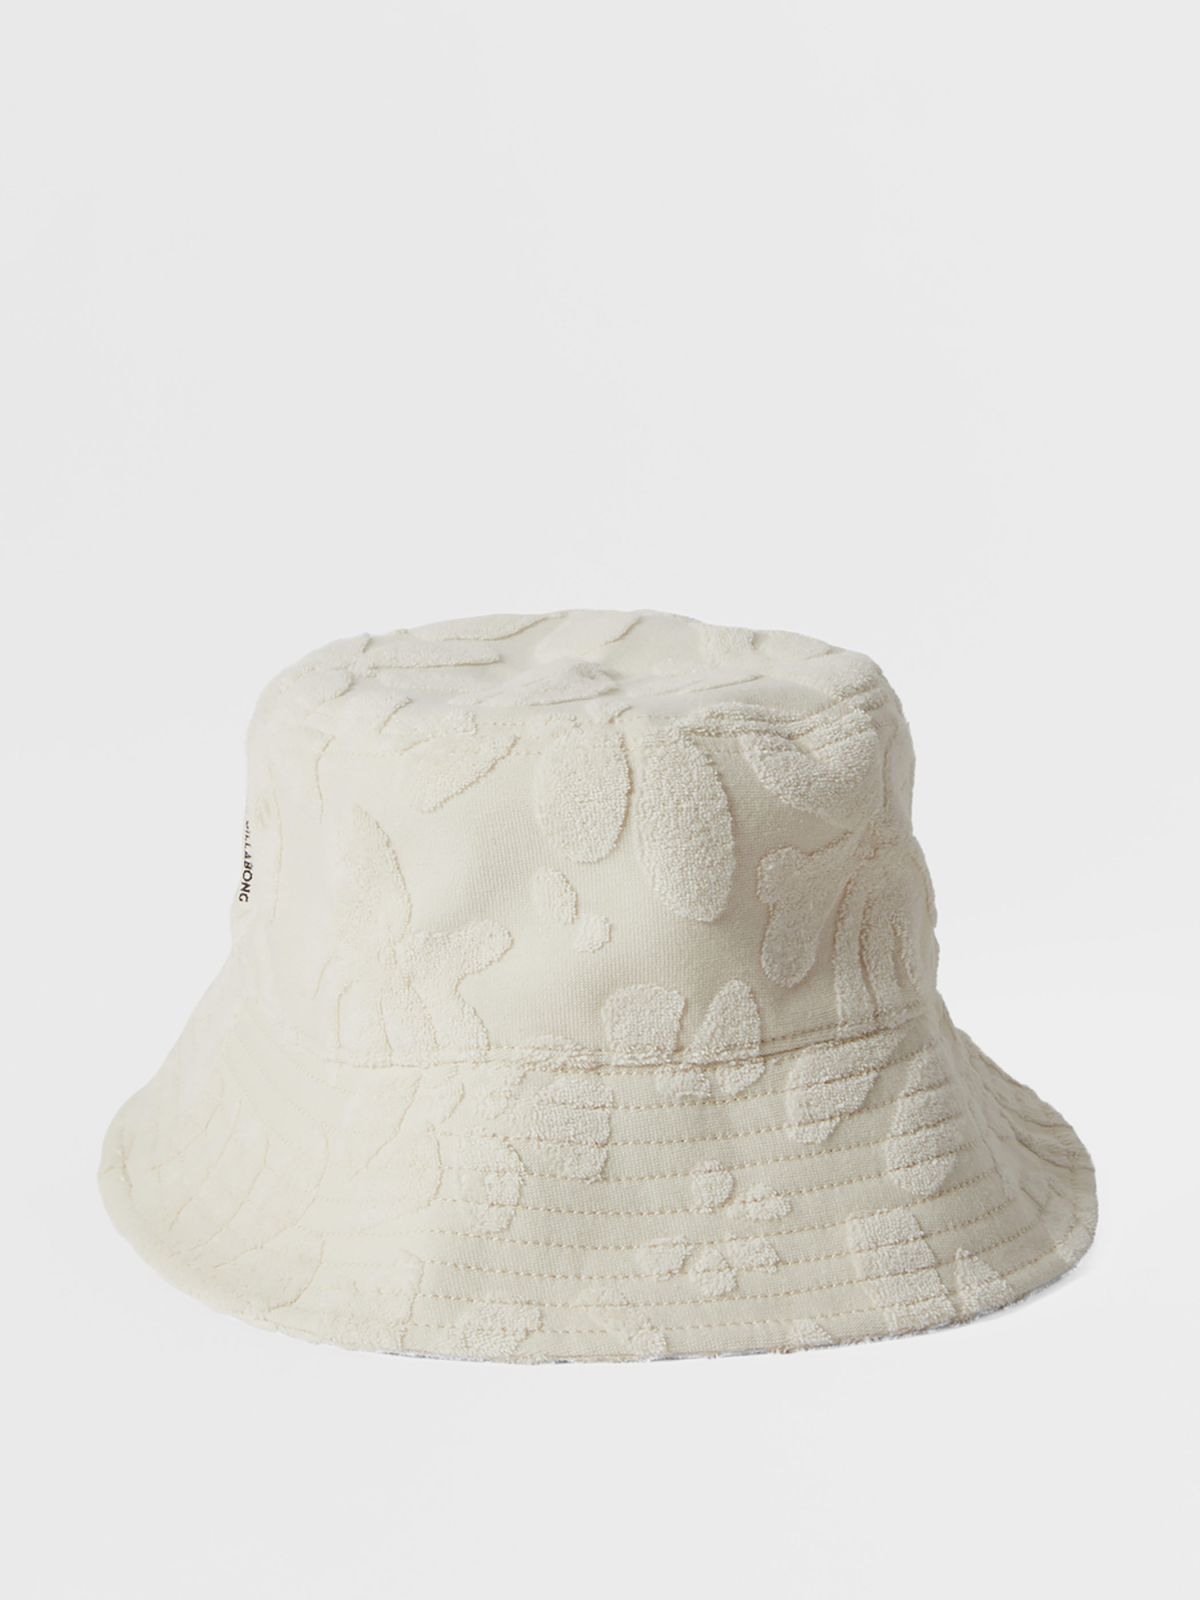  כובע באקט עם פרחים בטקסטורה / נשים של BILLABONG